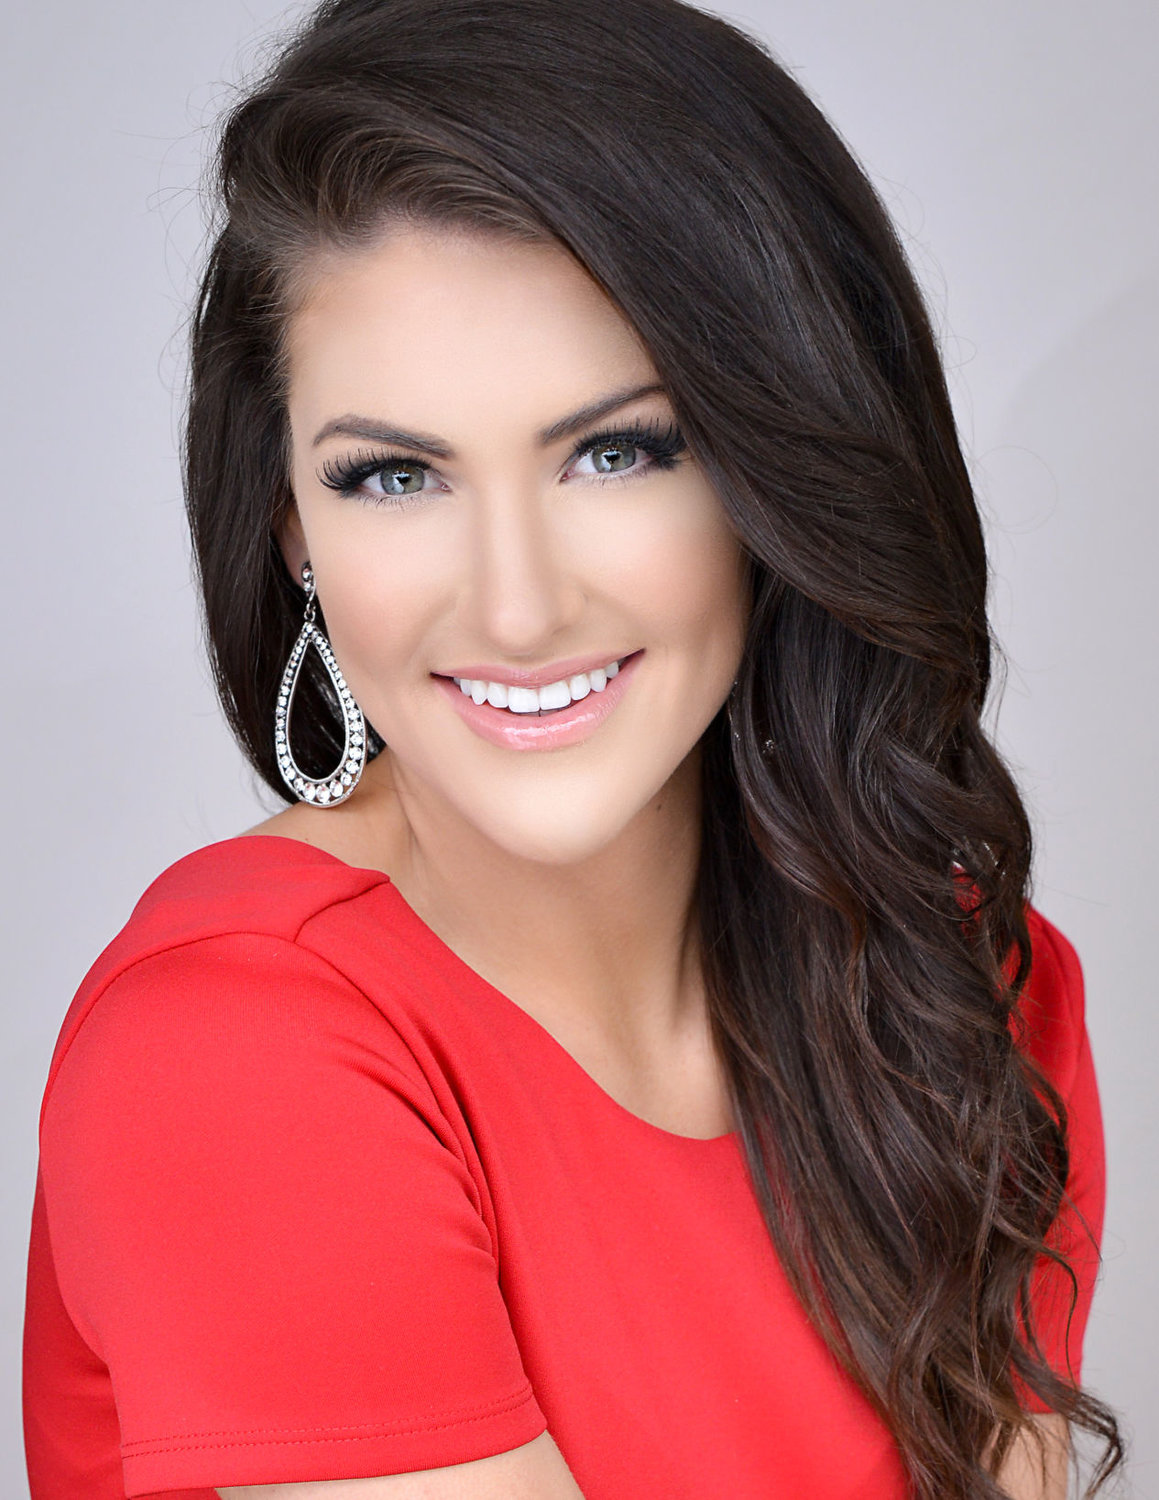 New Miss Arkansas named Harrison Daily